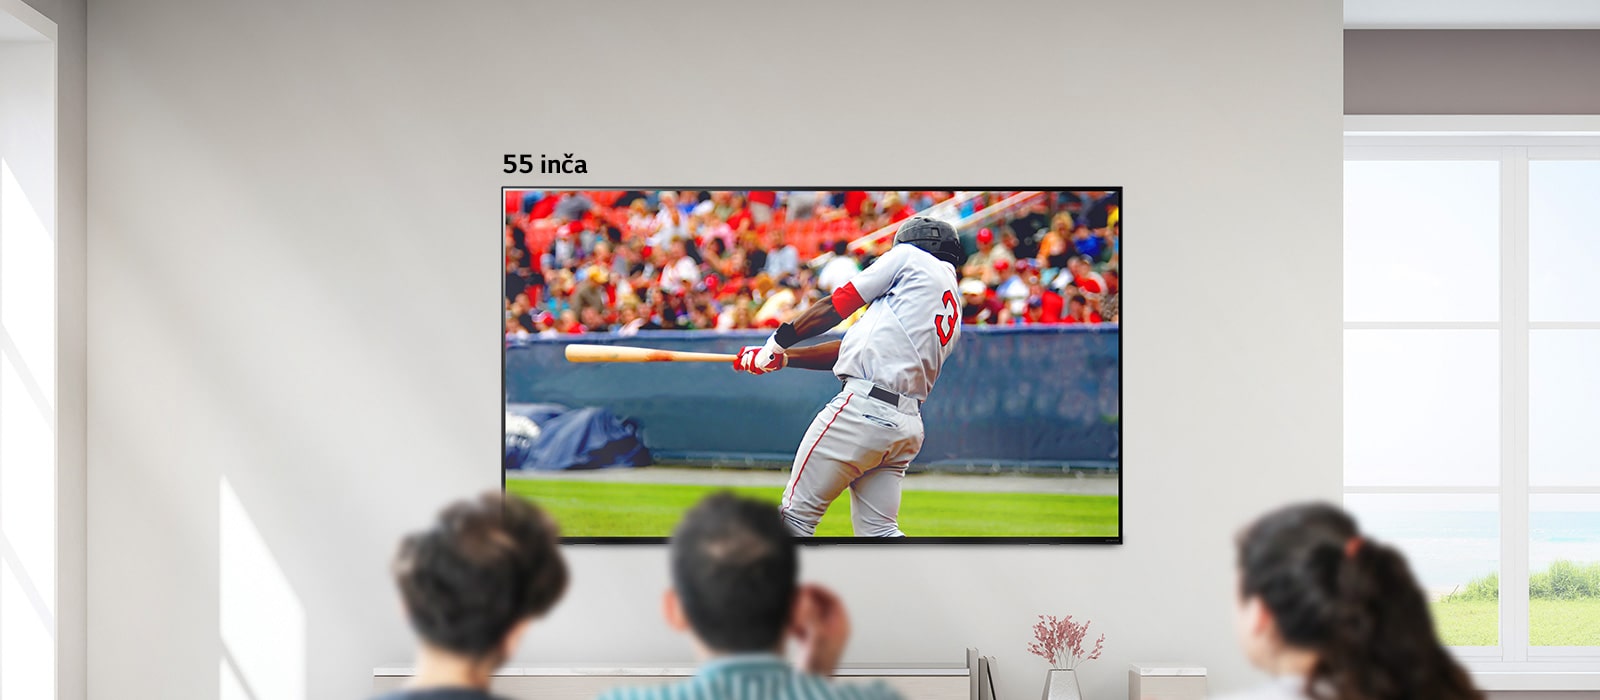 Pomična slika troje ljudi koji gledaju bejzbol na velikom zidnom televizoru. Kako se pomičete slijeva udesno, zaslon postaje veći.